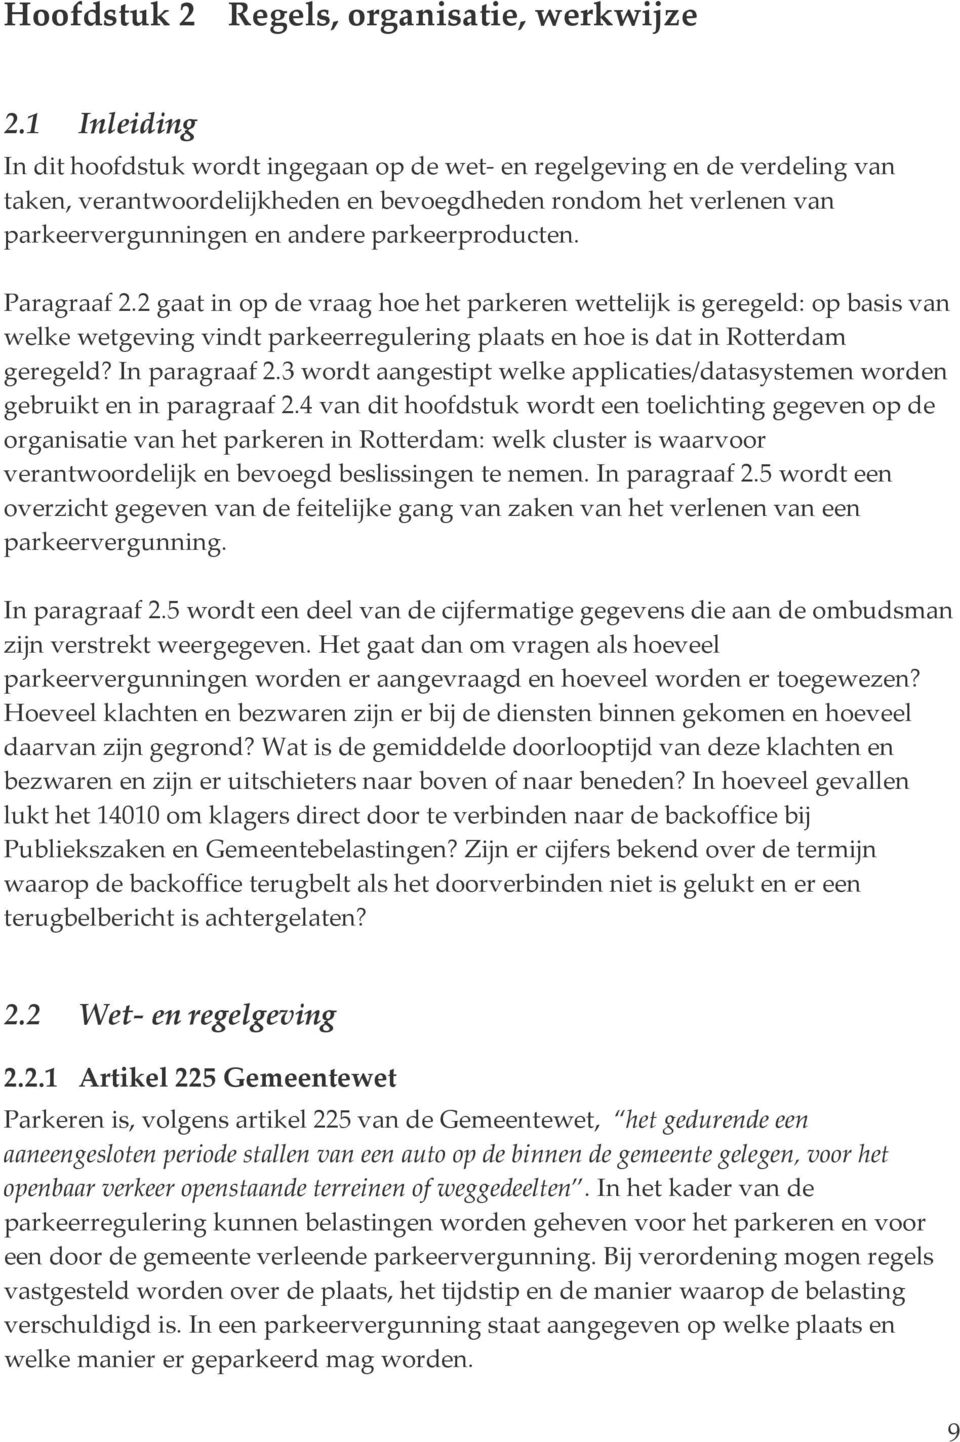 parkeerproducten. Paragraaf 2.2 gaat in op de vraag hoe het parkeren wettelijk is geregeld: op basis van welke wetgeving vindt parkeerregulering plaats en hoe is dat in Rotterdam geregeld?